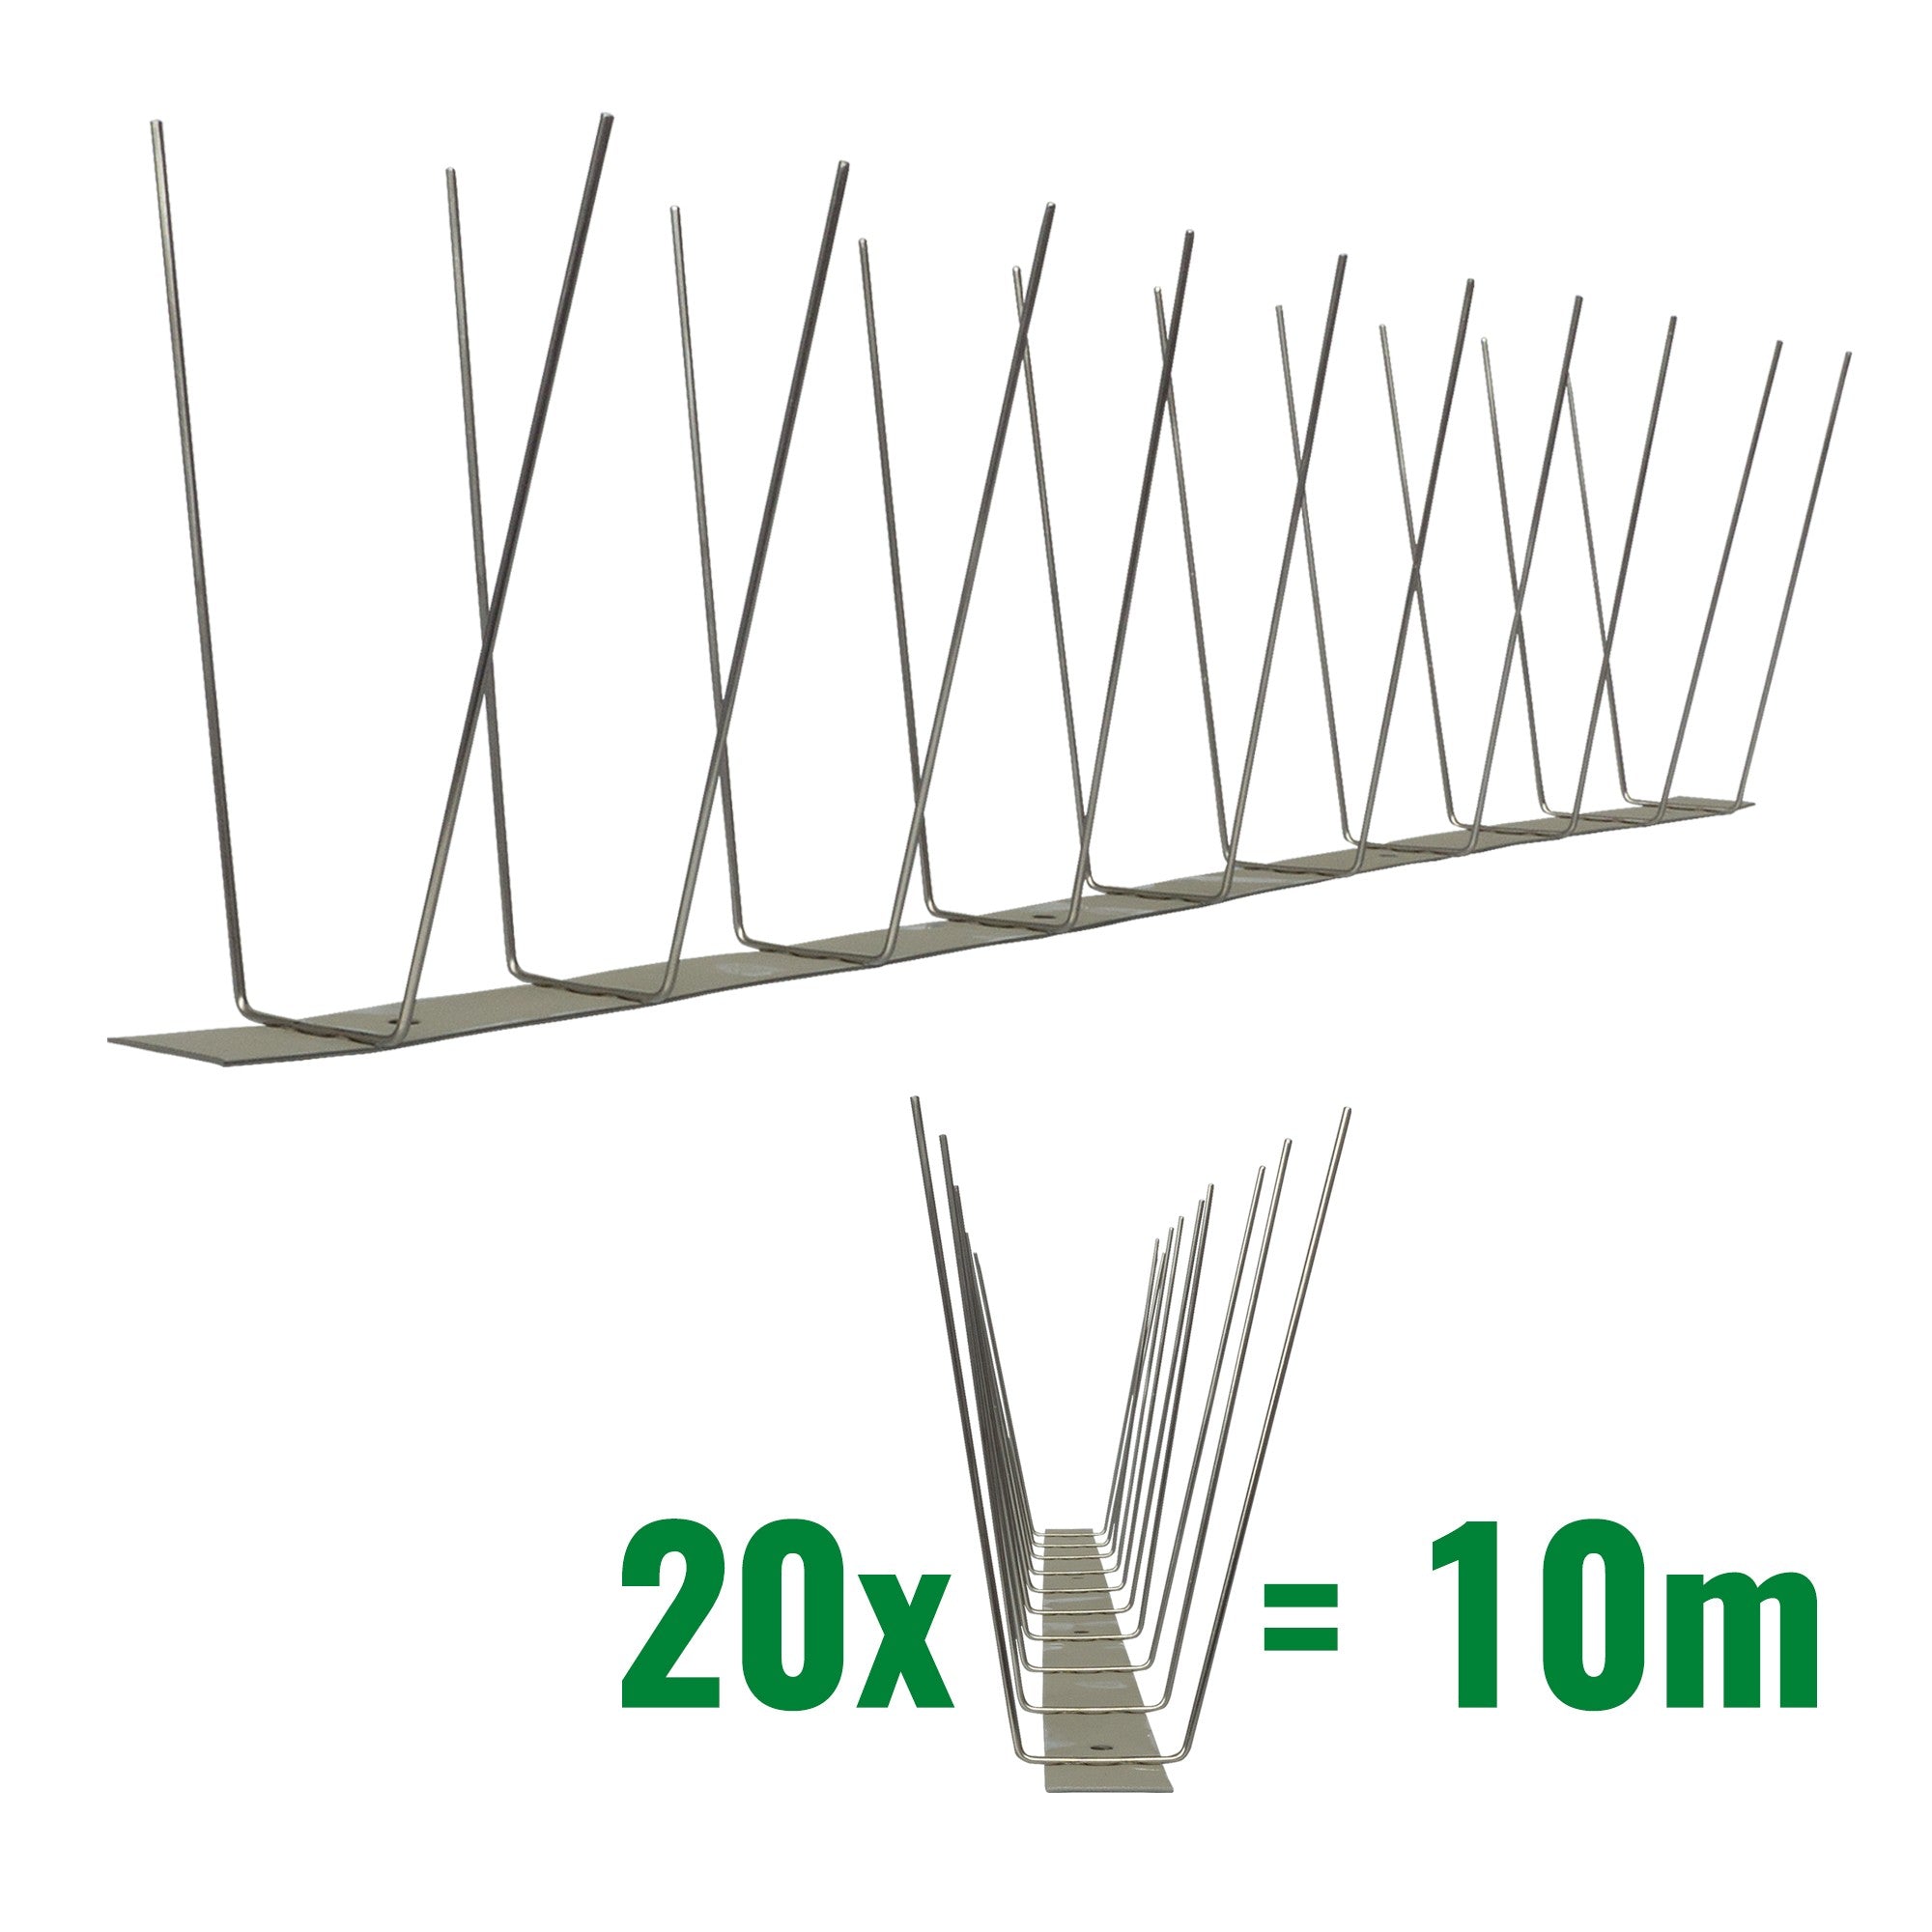 10 Meter (20 x 0,5m) Taubenspikes 2-reihig auf V2A-Standard - hochwertige Lösung für Vogelabwehr Taubenabwehr Edelstahl Spikes